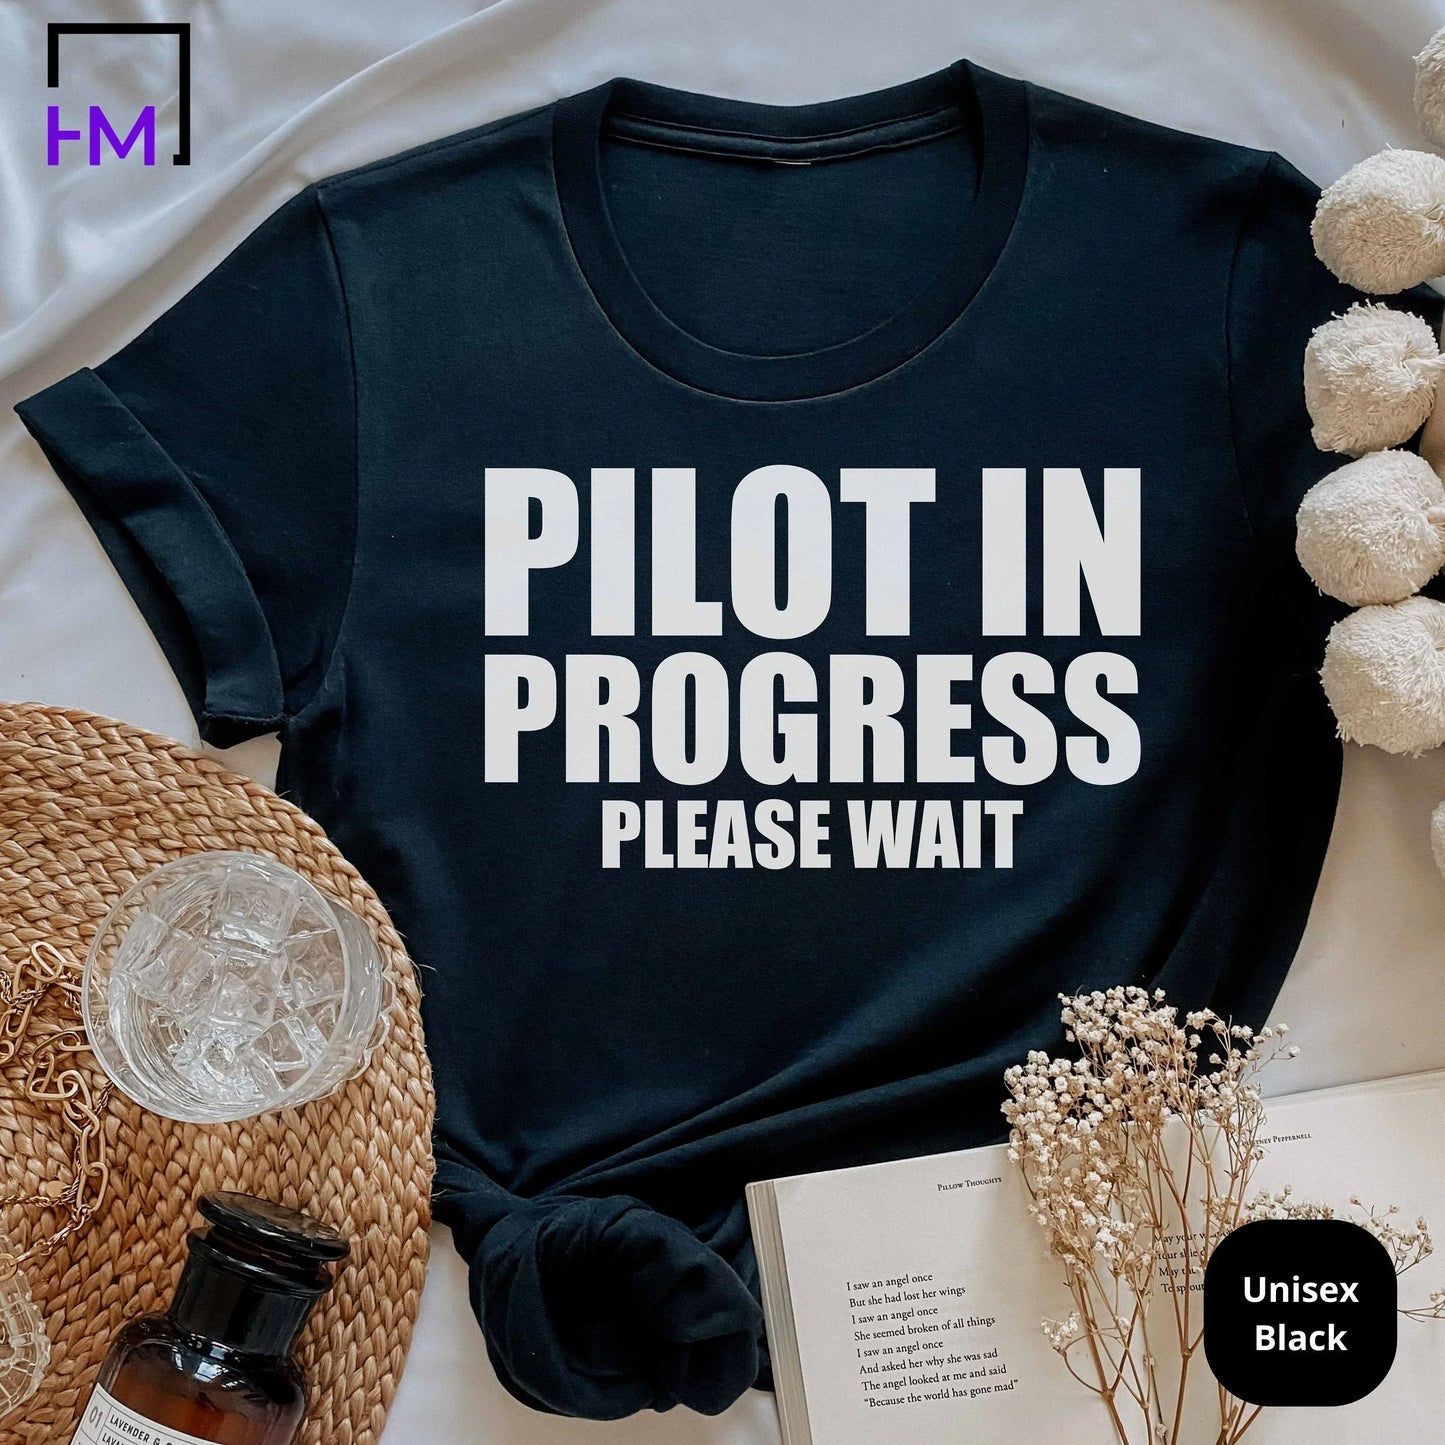 New Pilot Shirt, Airplane Mode Shirt, Aviation Graduate Student, Pilot Gift for Traveler, Adventurer Gift, Frequent Flyer Vacation Shirt